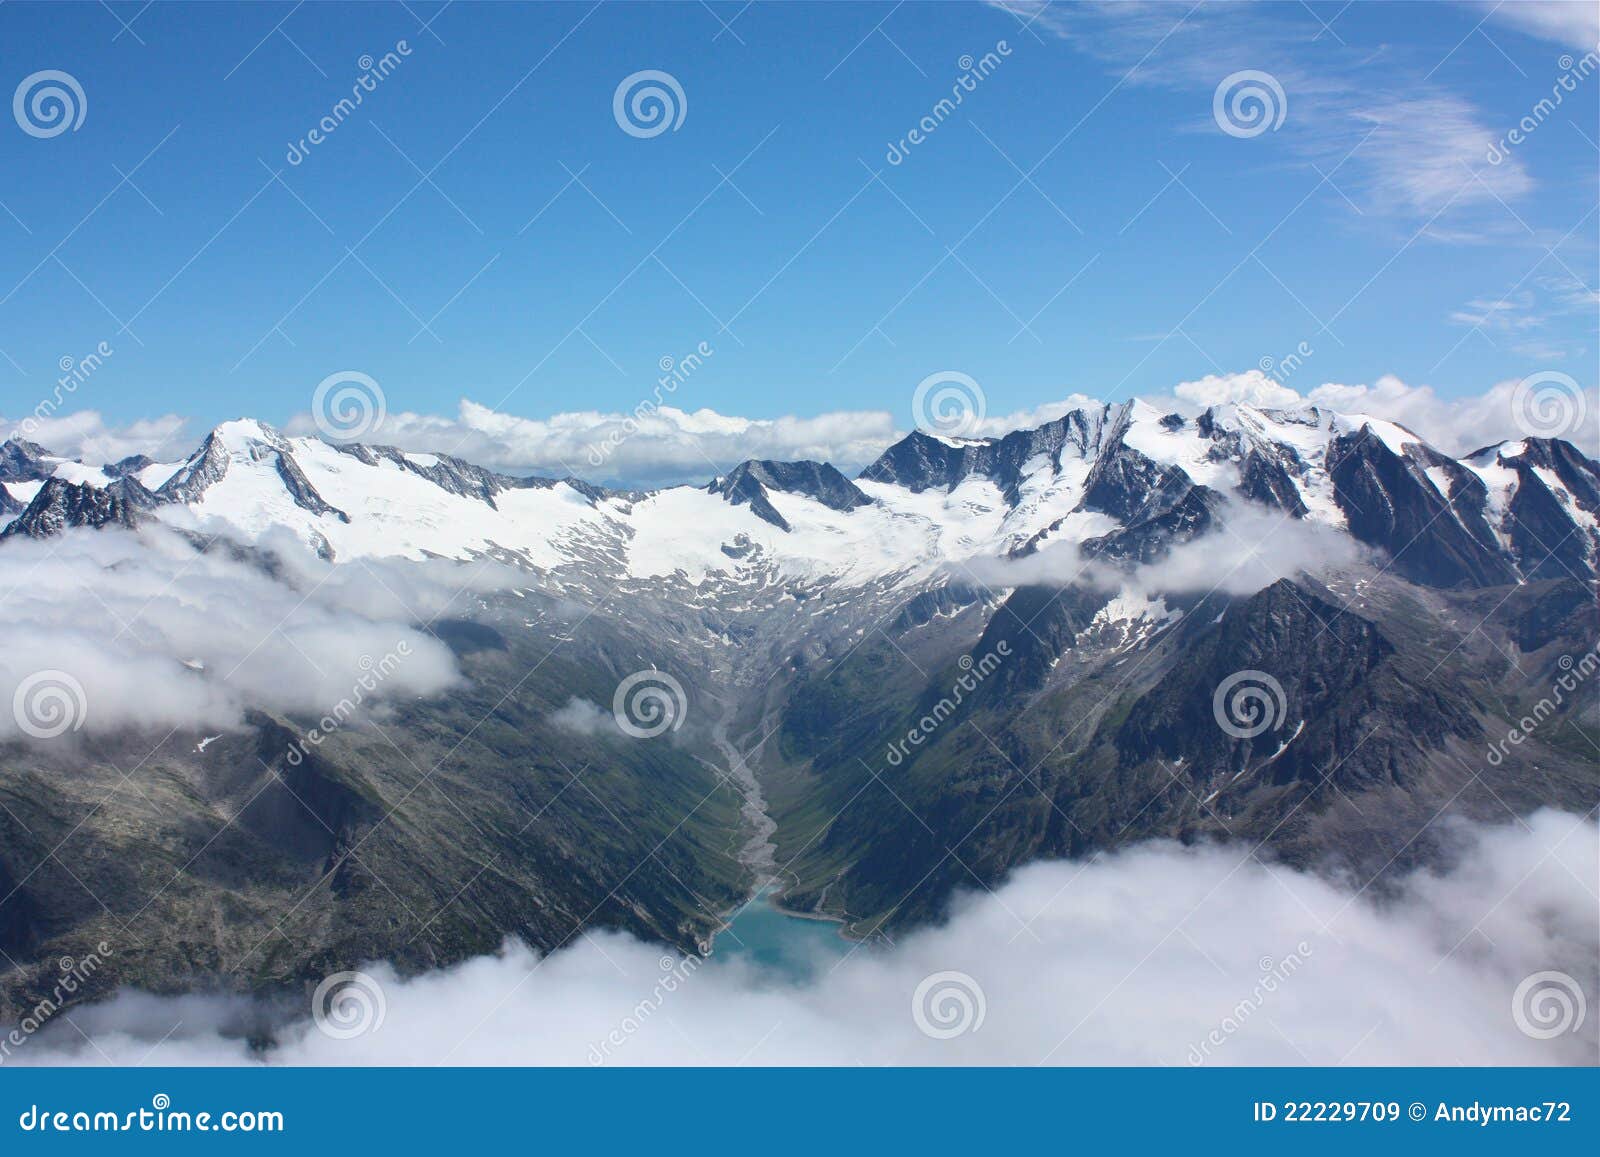 De Bergen Oostenrijk van Hintertux. De Bergen van Hintertux in Oostenrijk met sneeuw op de pieken.